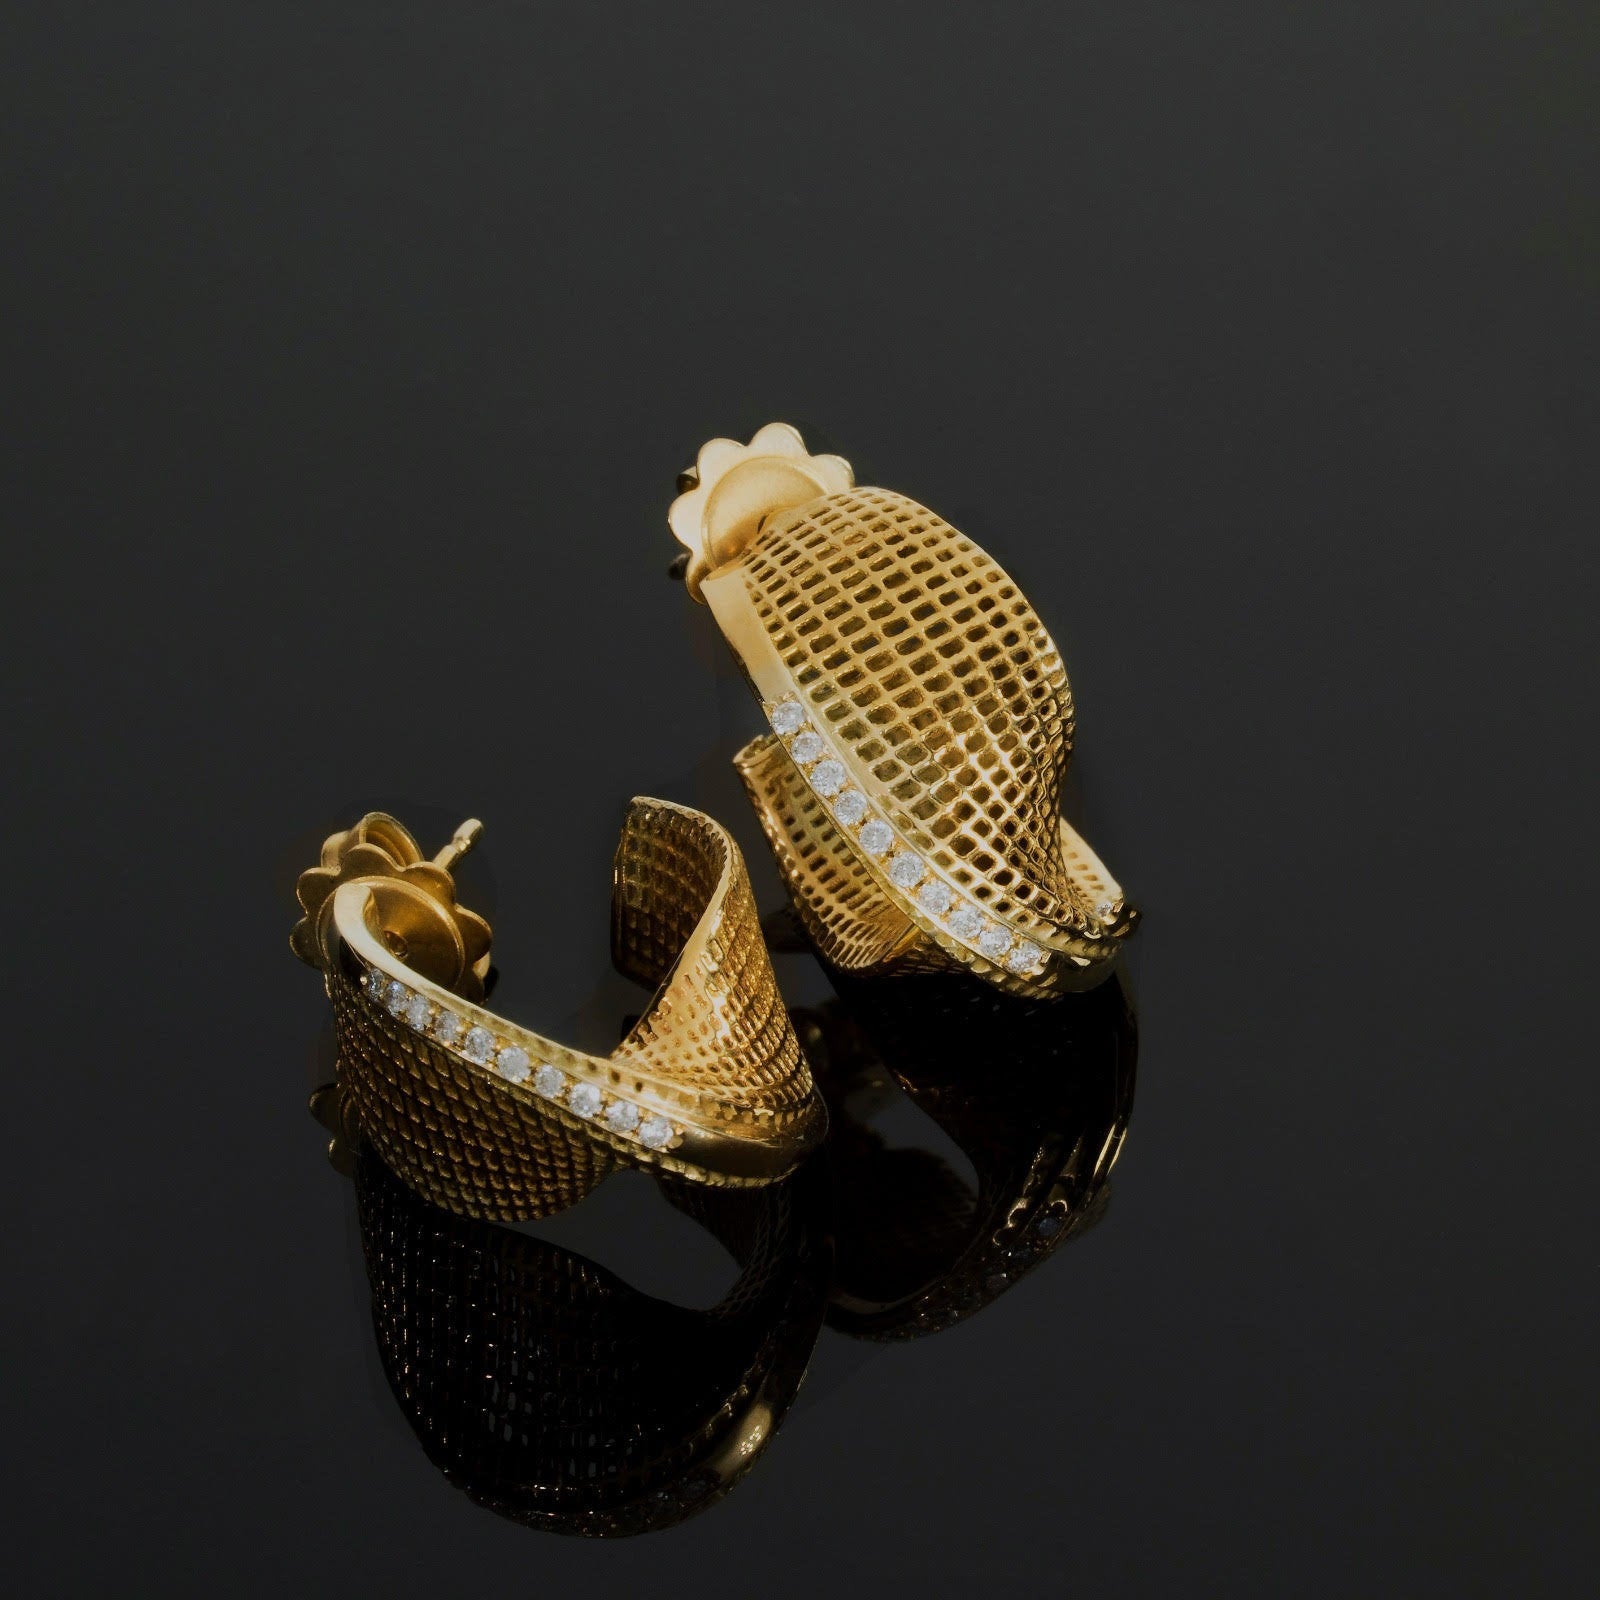 18K - Diamonds Small Mobius Earrings -pave diamonds line